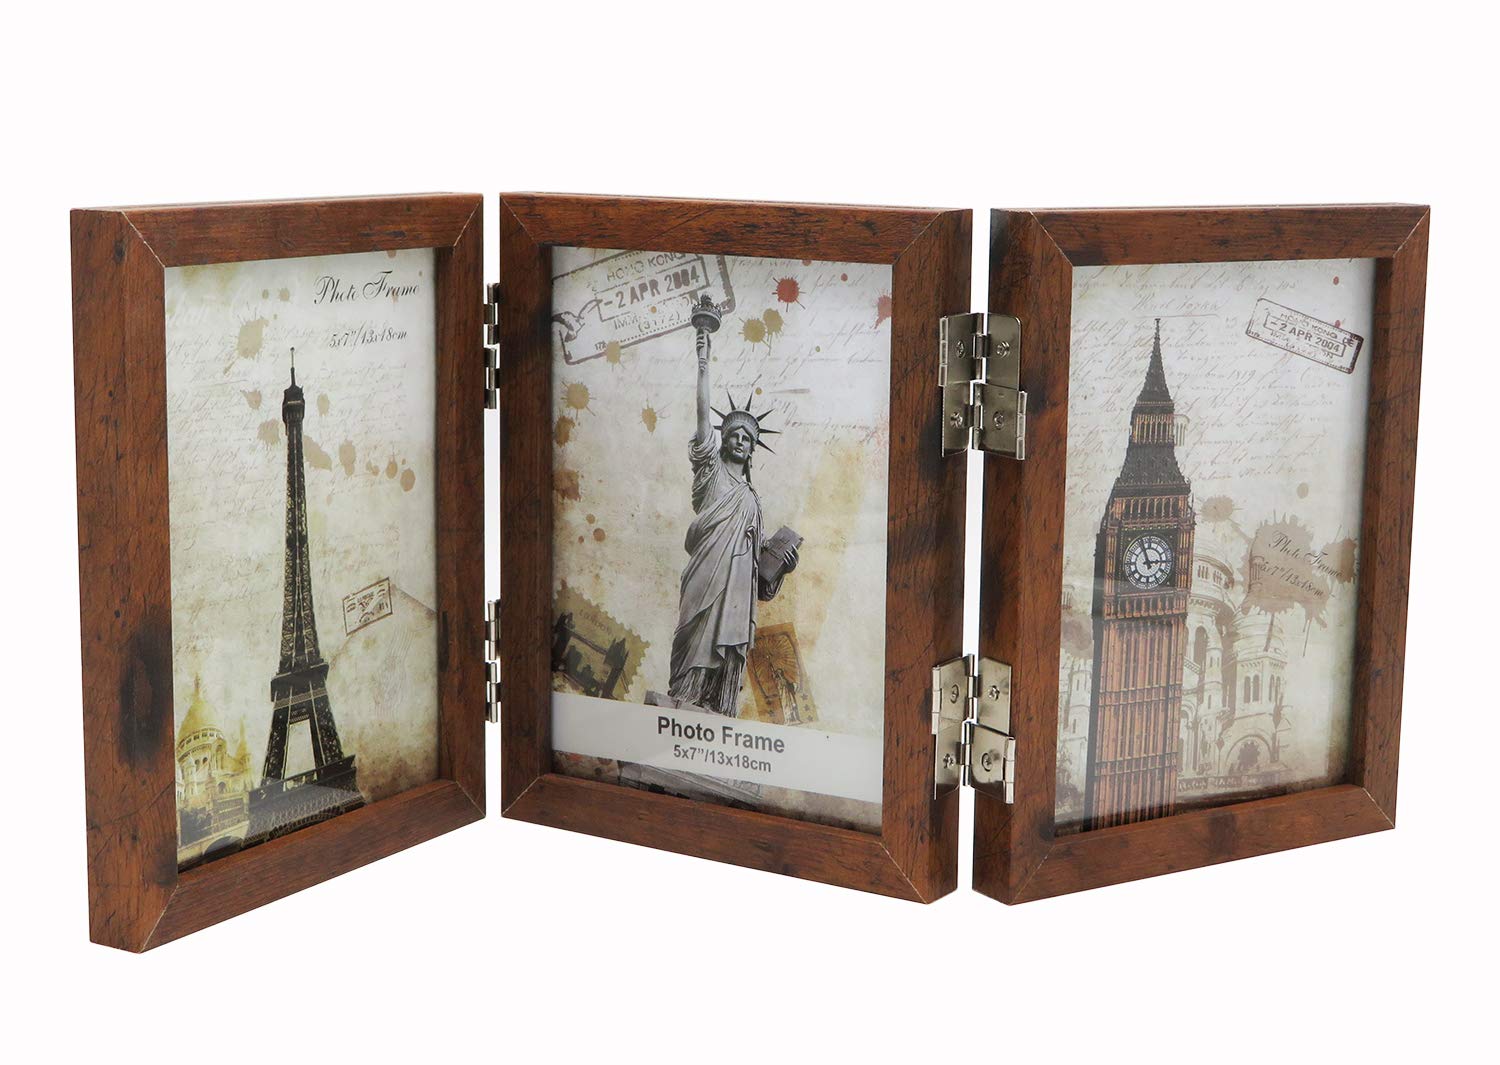 Smiling Art klappbarer Bilderrahmen aus MDF Holz mit Glas für 6 Fotos (Braun 360°, 6x13x18 cm)